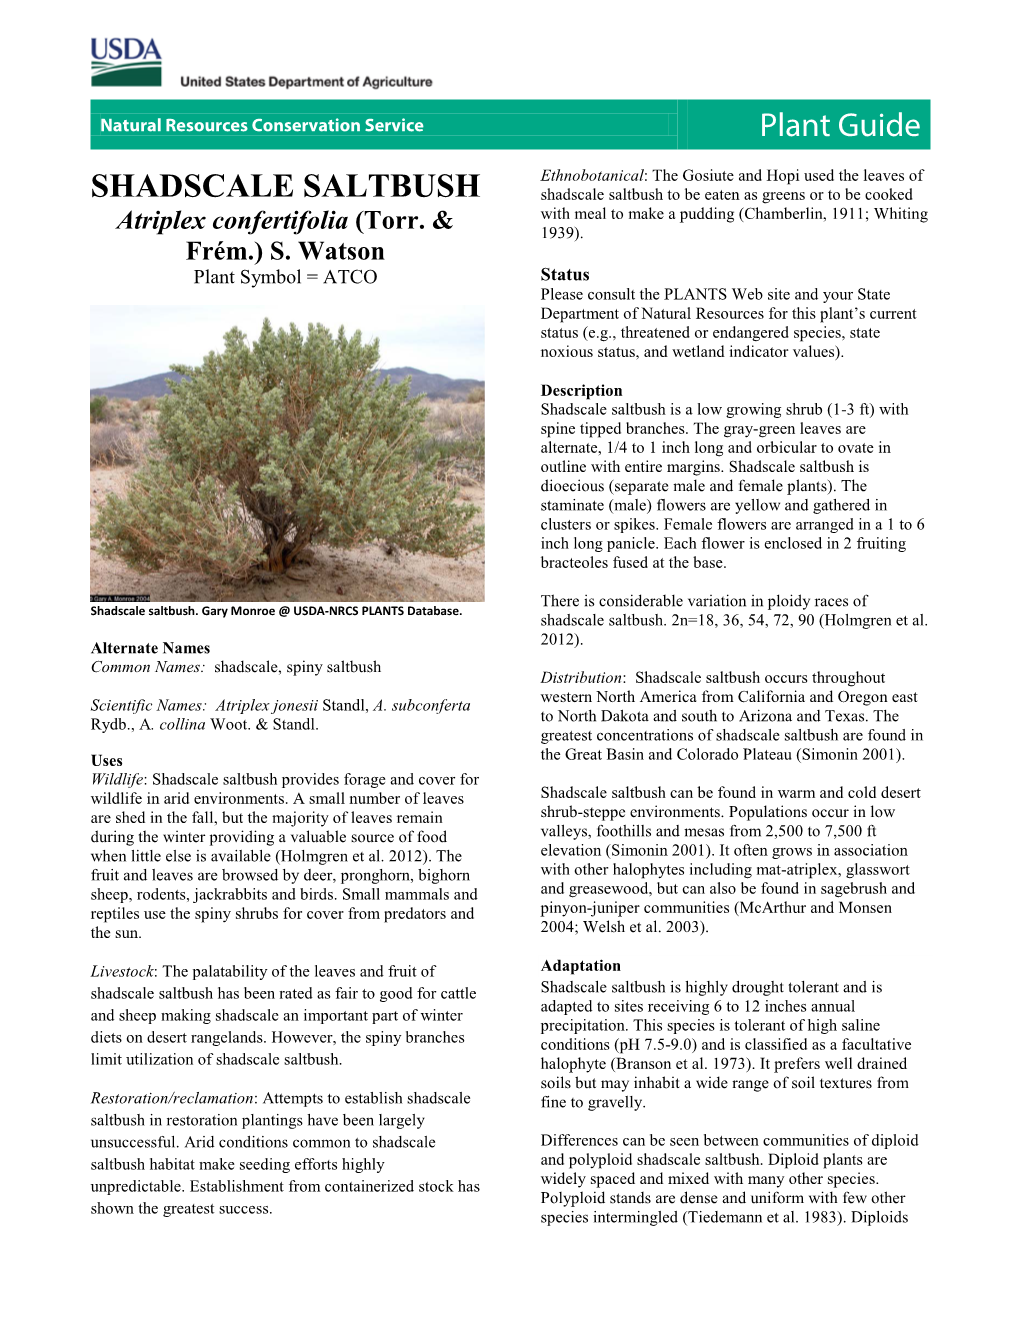 Plant Guide for Shadscale Saltbush (Atriplex Confertifolia)